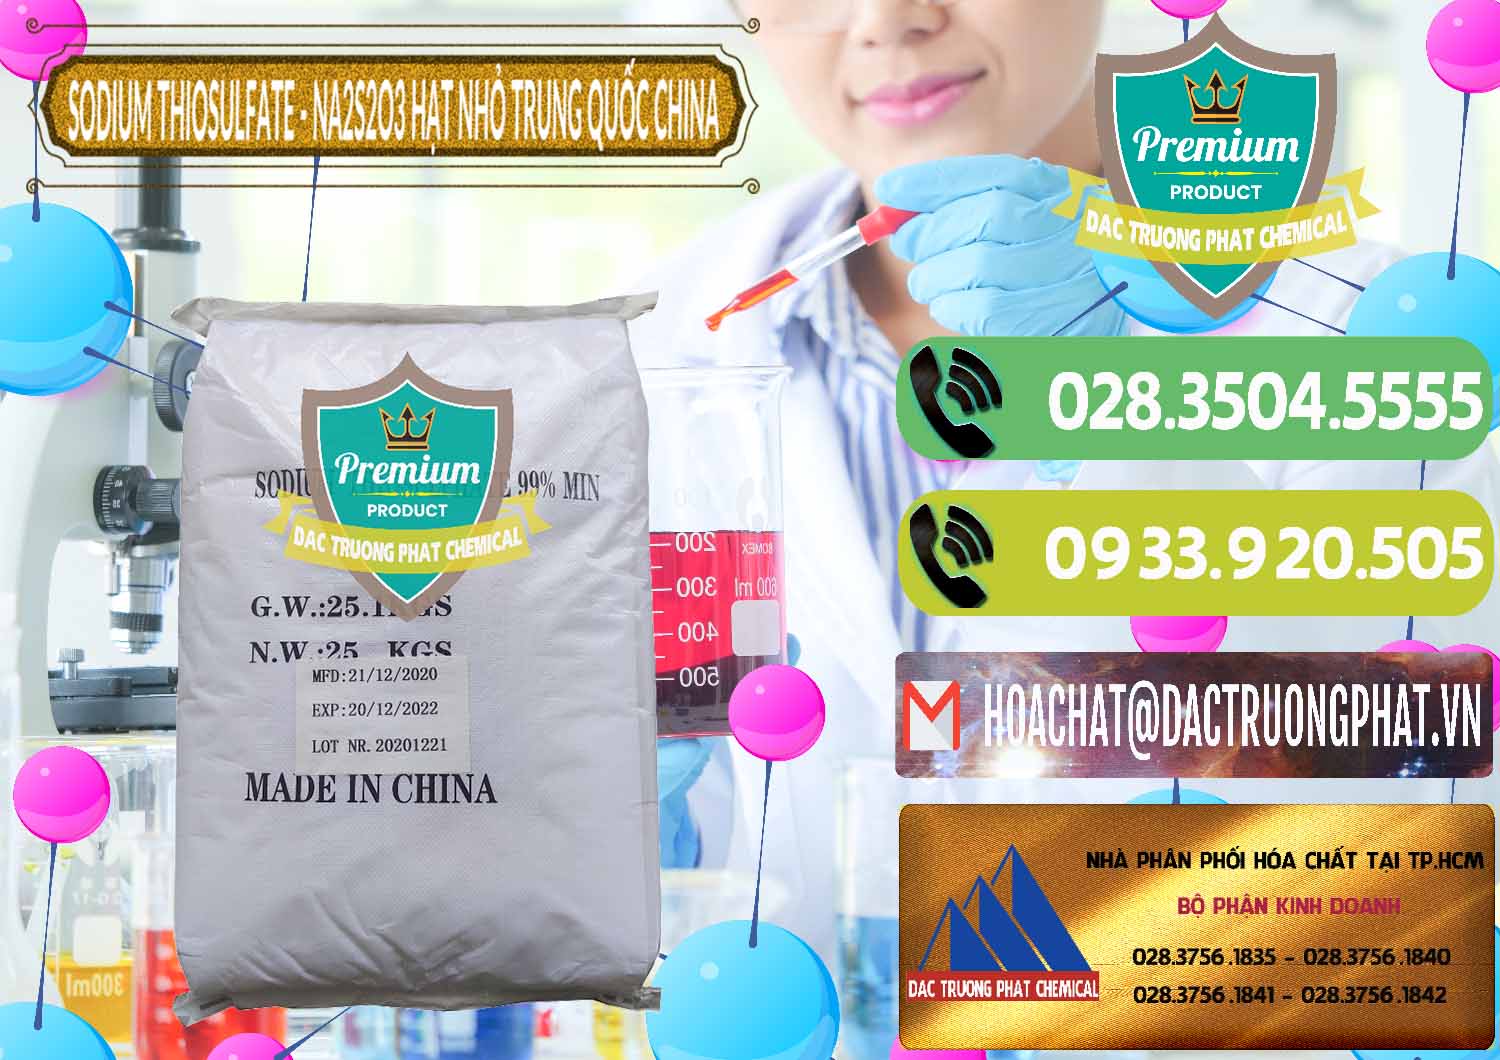 Cty chuyên bán _ cung cấp Sodium Thiosulfate - NA2S2O3 Hạt Nhỏ Trung Quốc China - 0204 - Kinh doanh và cung cấp hóa chất tại TP.HCM - hoachatmientay.vn